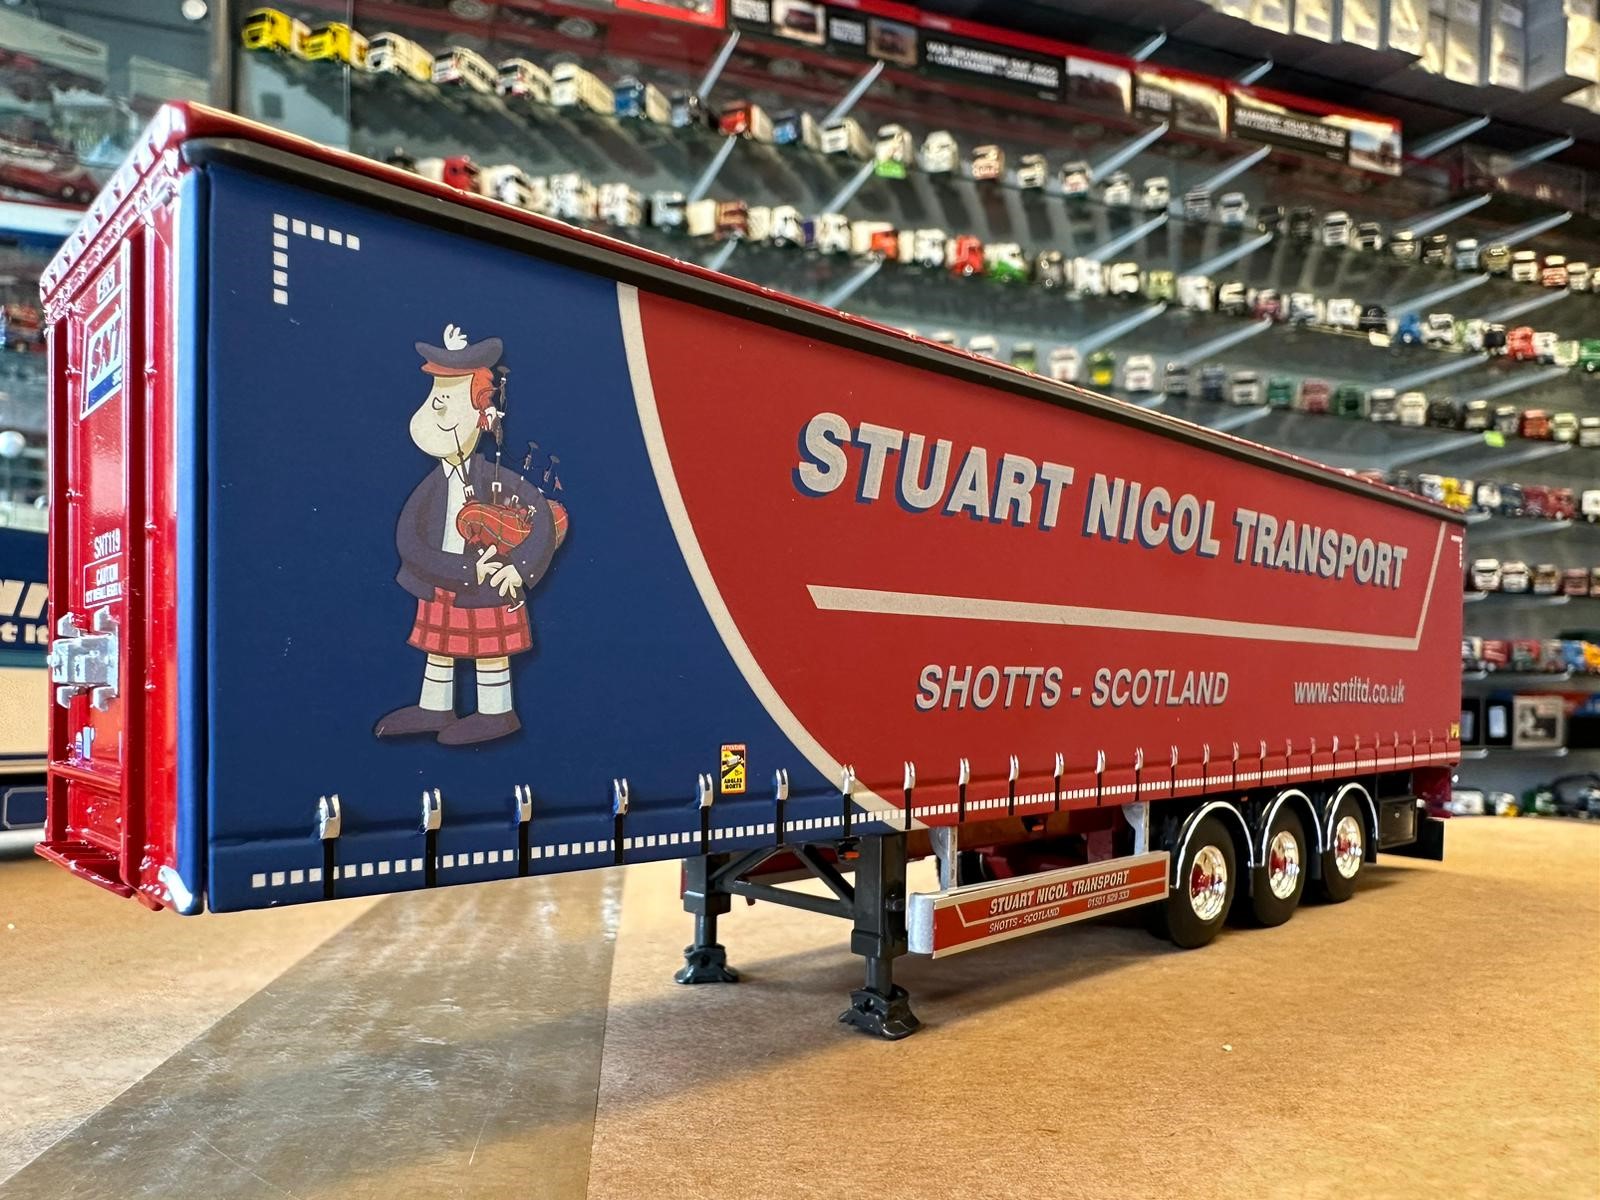 Stuart Nicol Transport